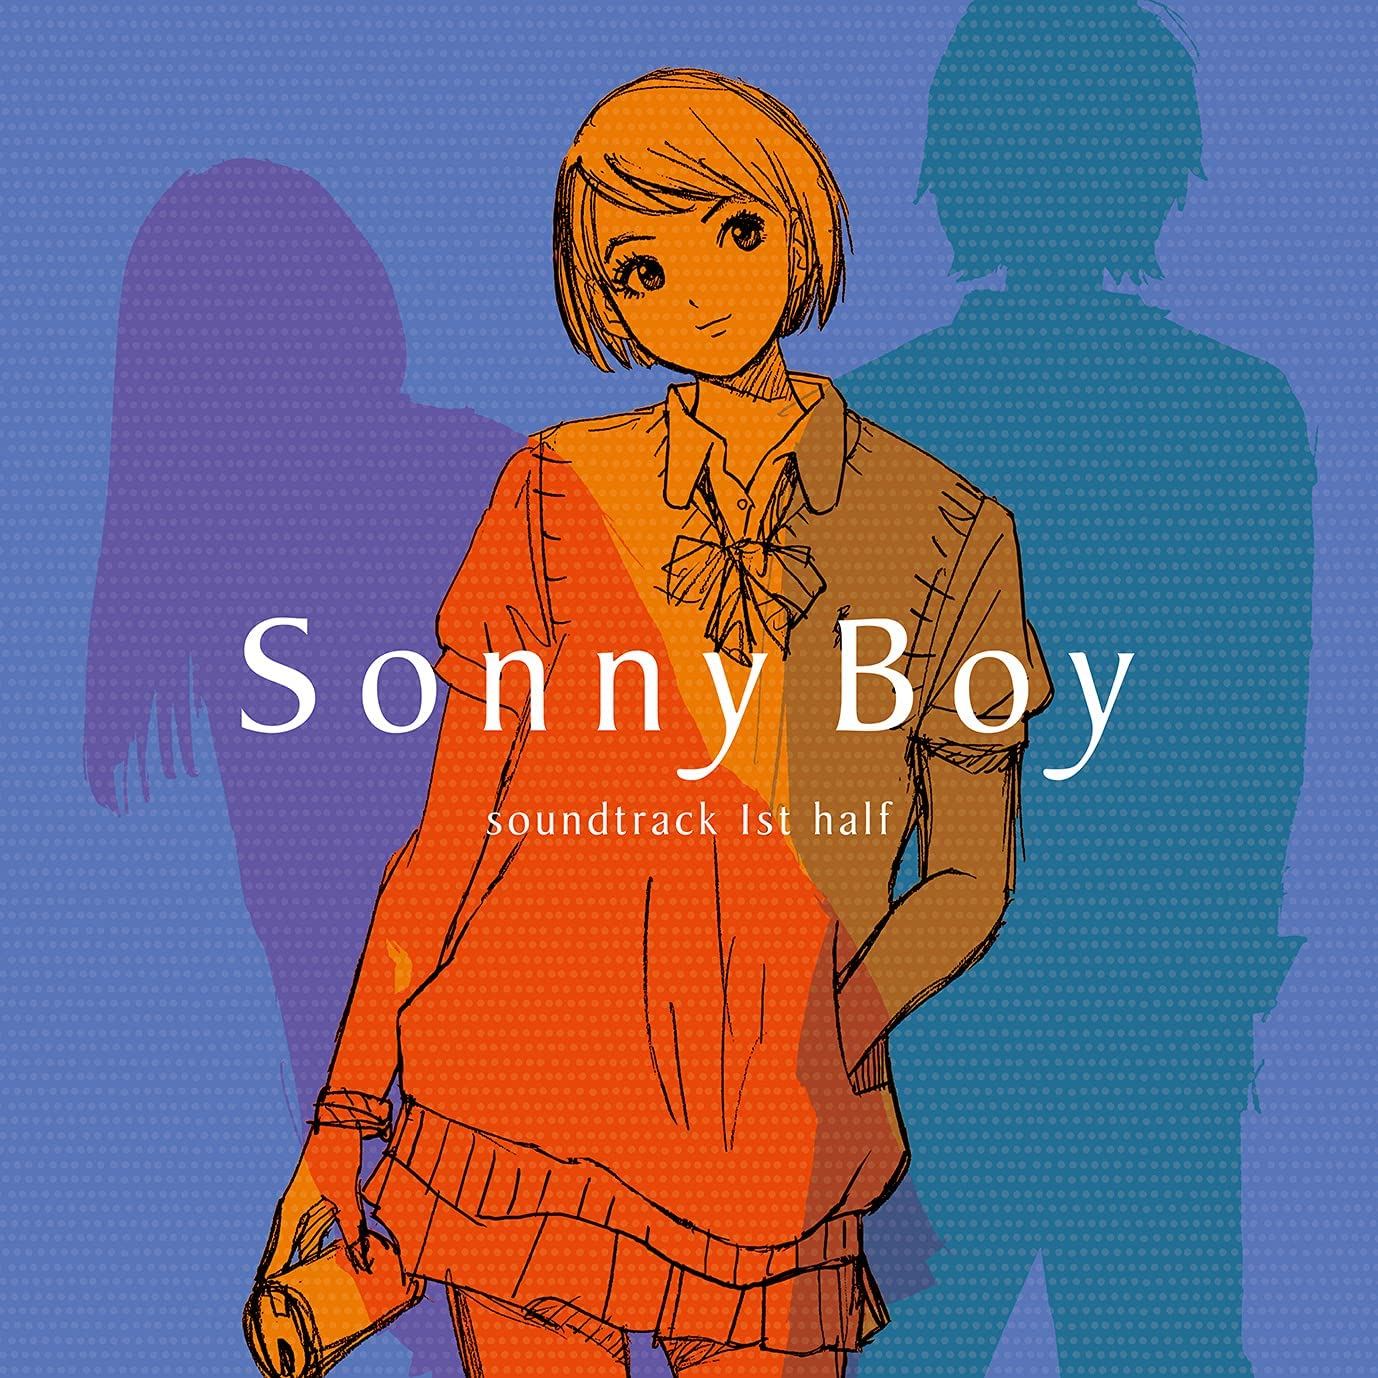 Anime Soundtrack Sonny Boy Anime Soundtrack 1st Half Limited Edition Vinyl Various Artists